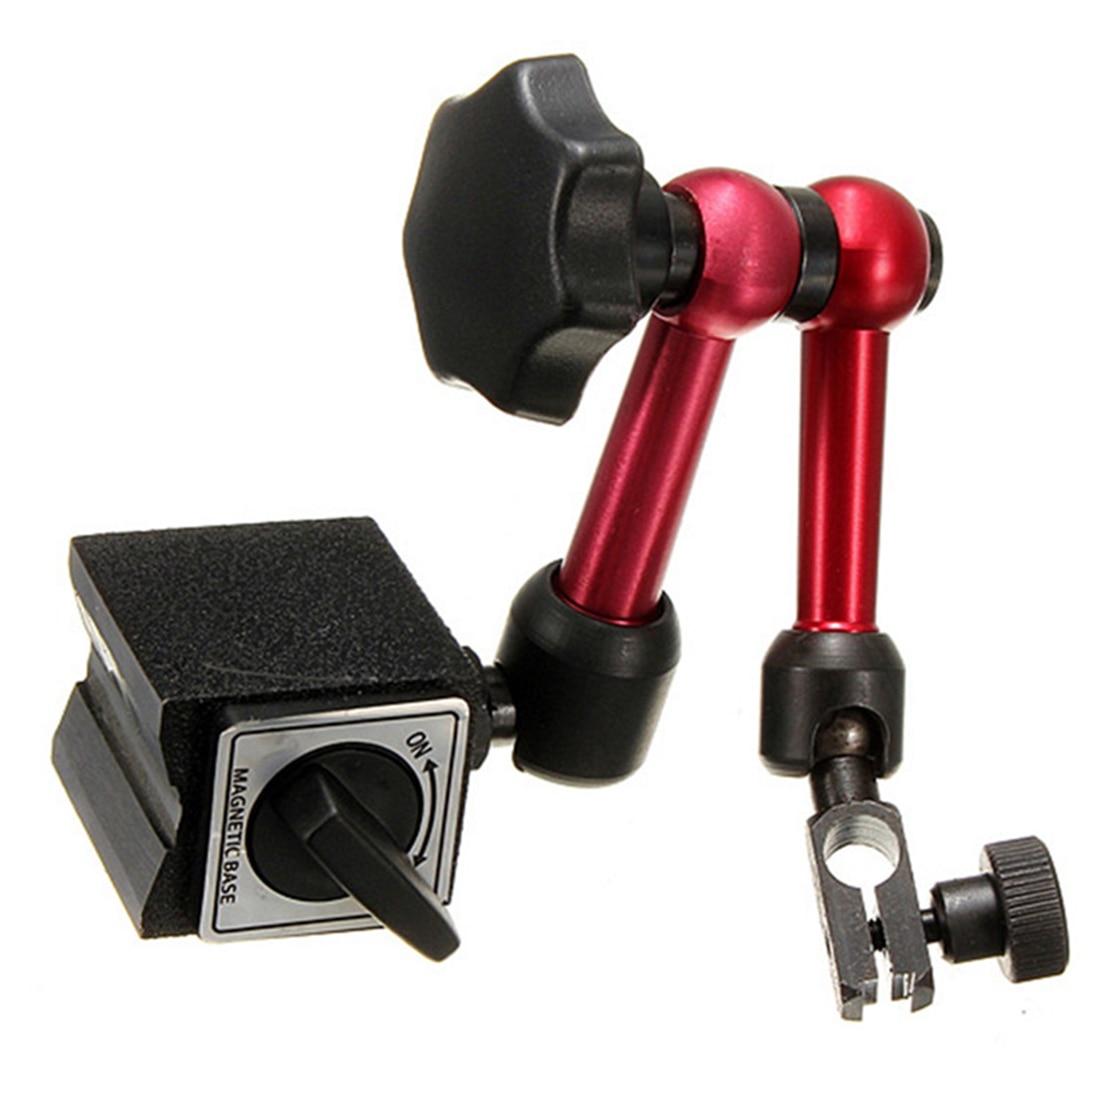 Mini universal fleksibel urskive testindikator støtteholder stativ magnetisk base præcisionsindikatorer måleværktøjssæt